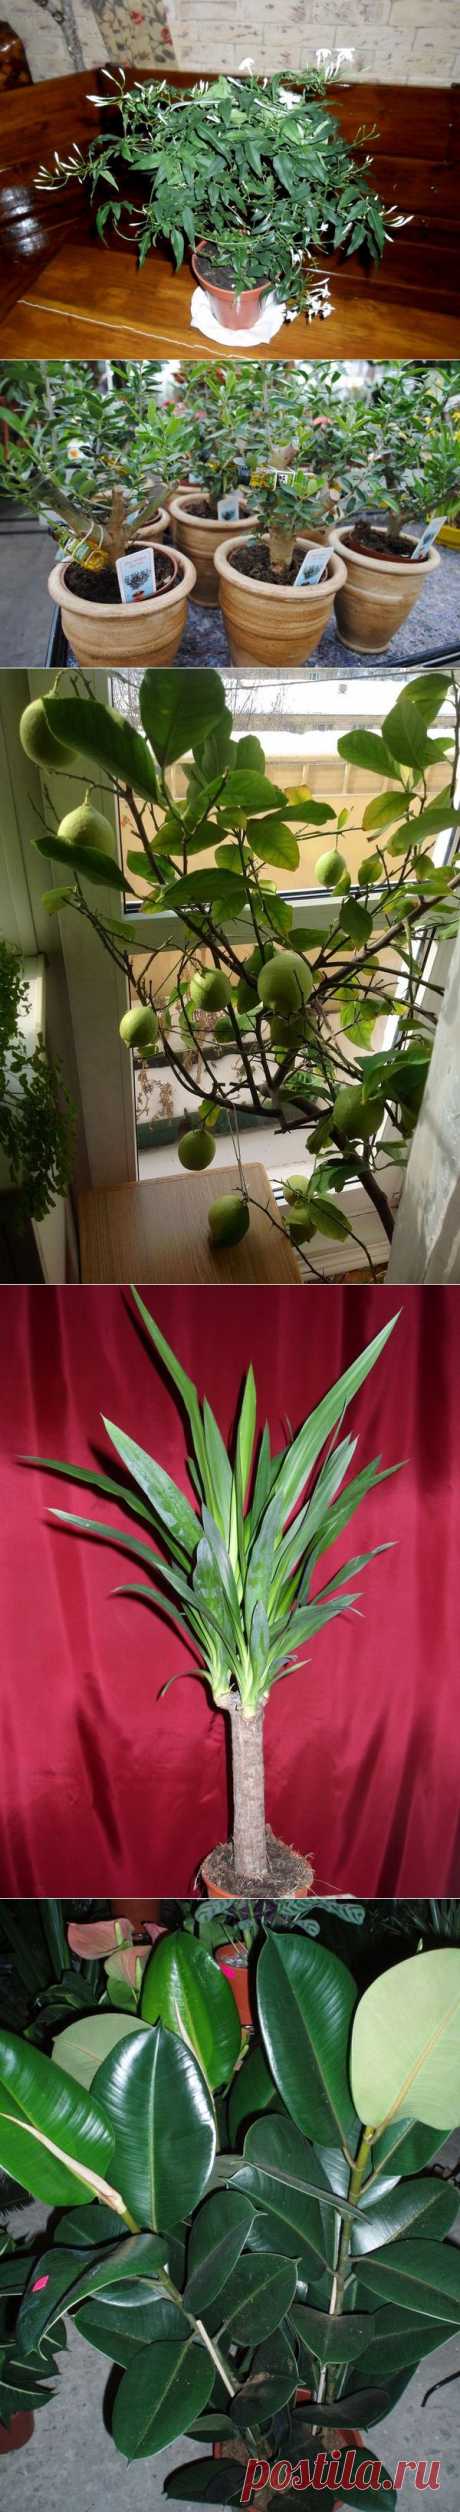 10 самых популярных растений для гостиной / Домашние растения / 7dach.ru